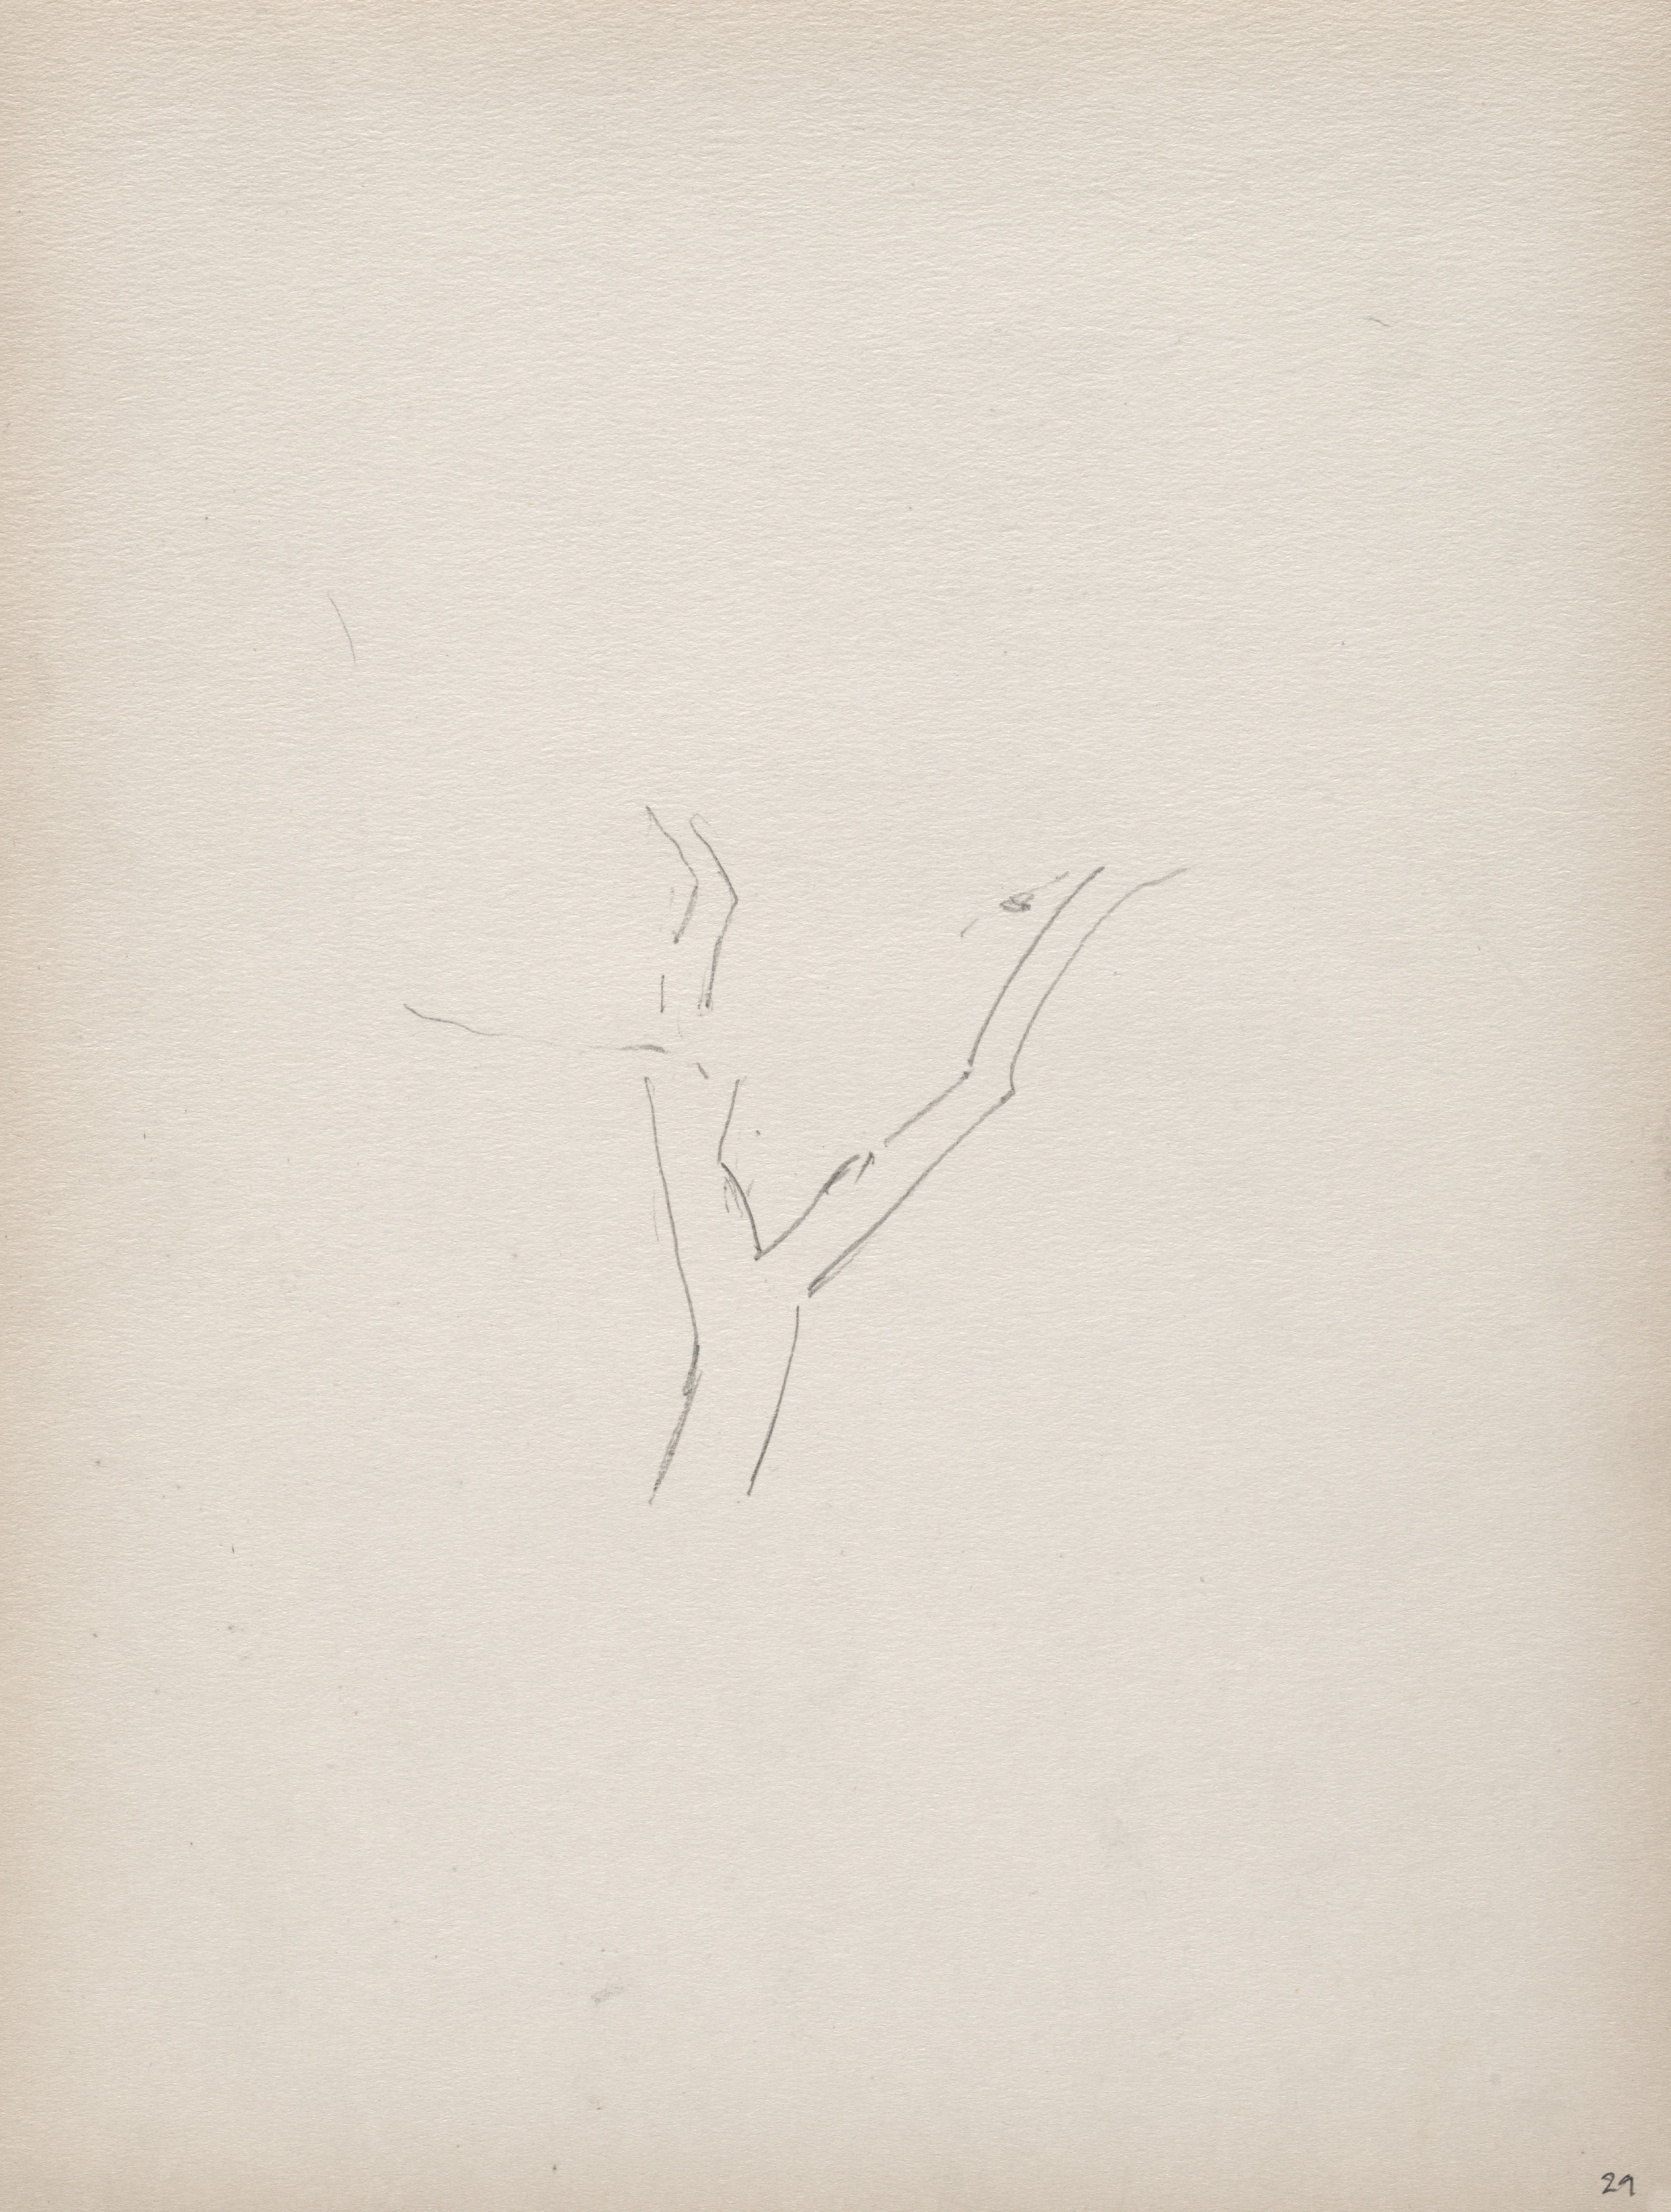 Sketchbook No. 3, page 29: Tree